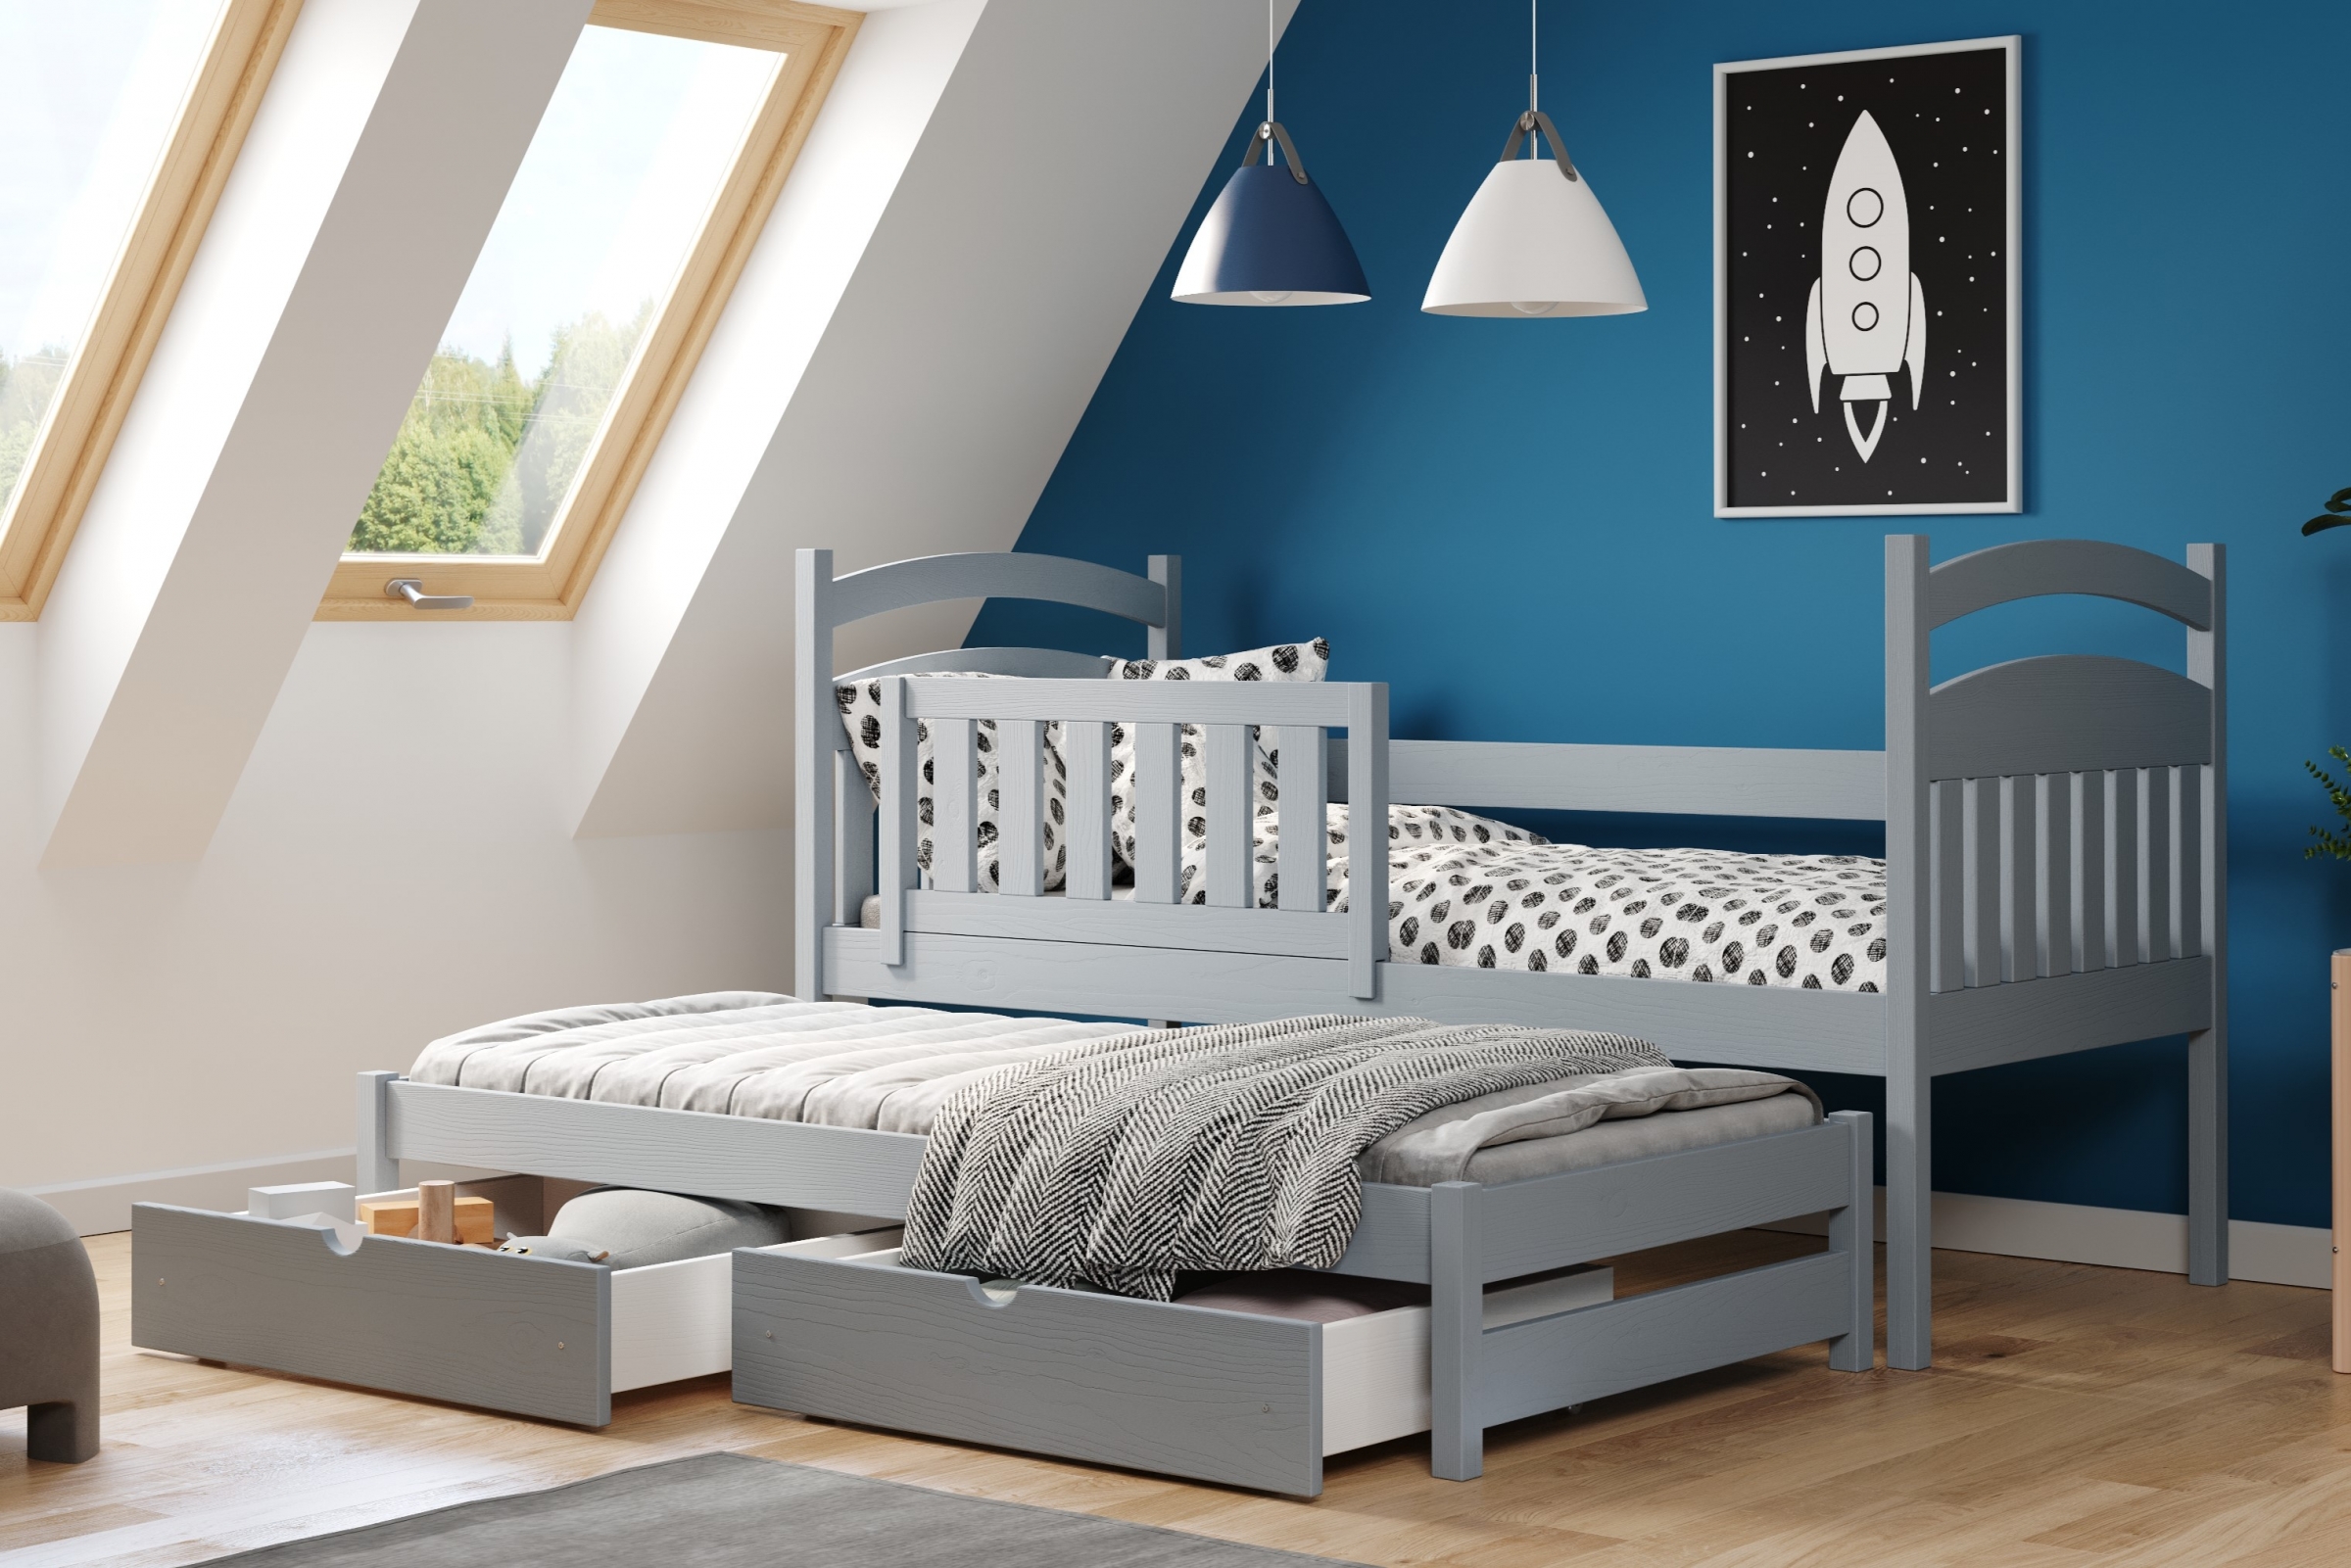 Detská posteľ prízemná výsuvna Amely - Farba šedý, rozmer 80x190 Posteľ dzieciece prízemná s výsuvným lôžkom Amely - Farba šedý - vizualizácia